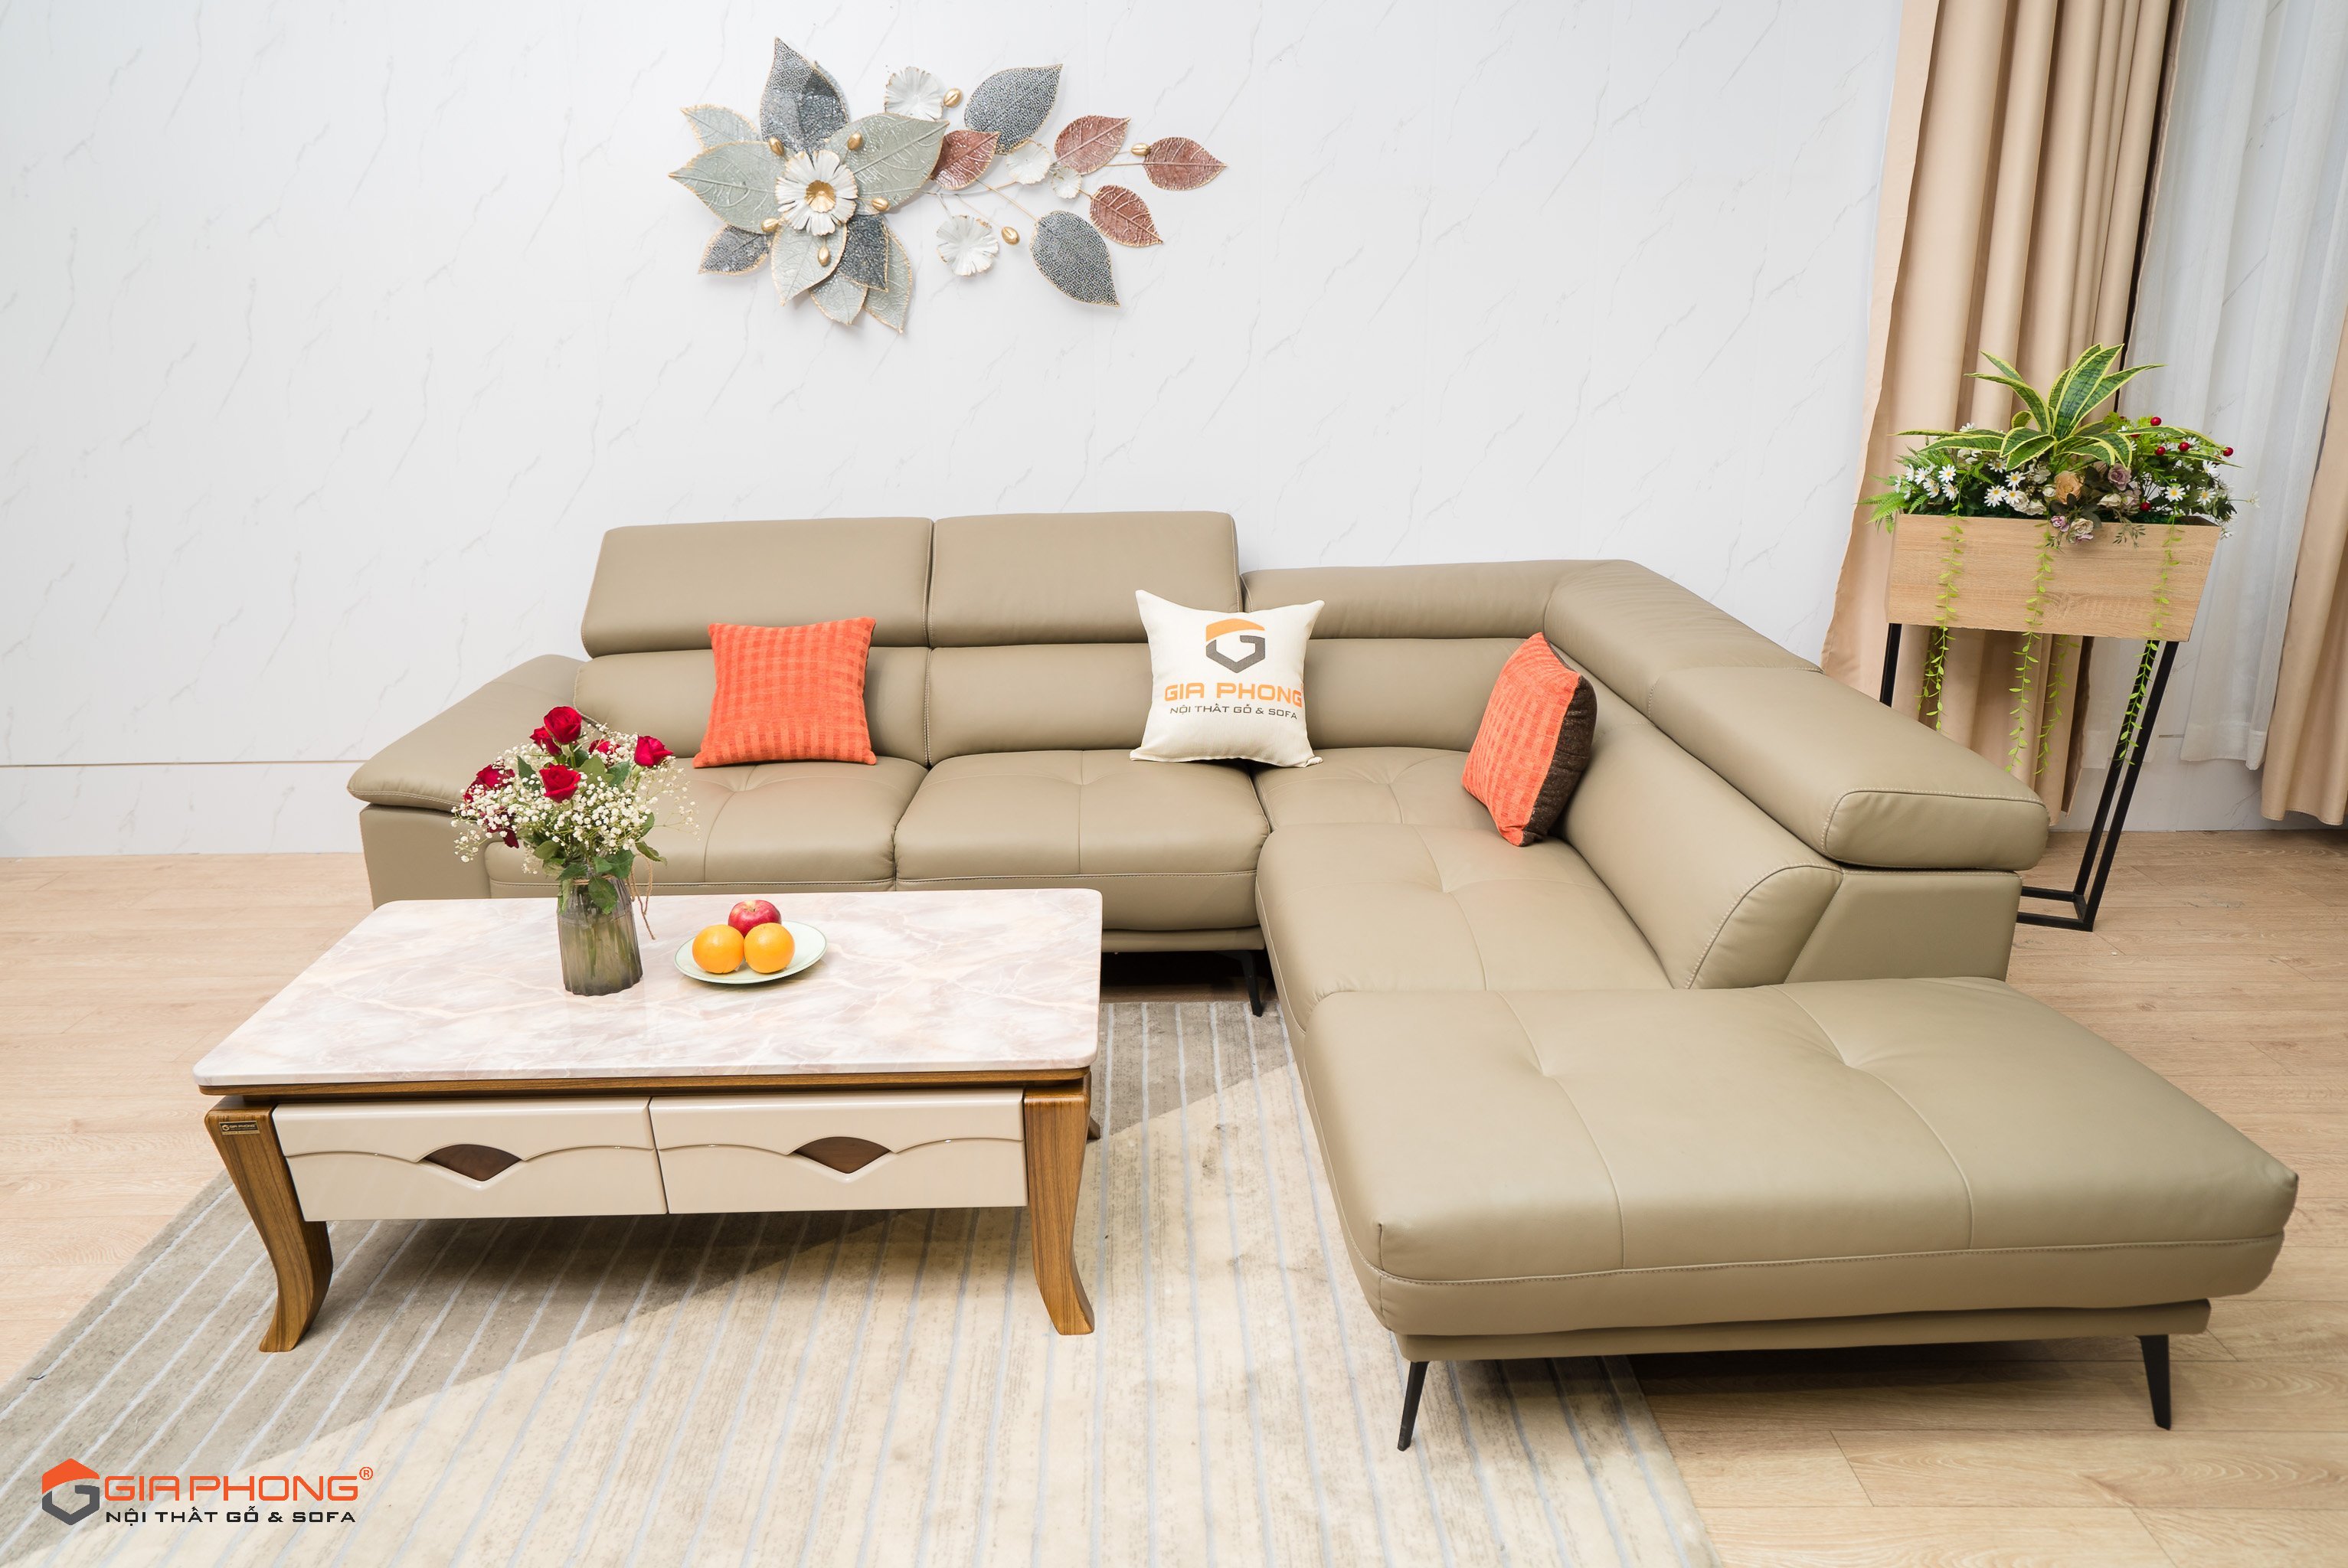 Bộ bàn ghế sofa Đà Nẵng sẽ làm cho không gian phòng khách của bạn trở nên ấm cúng và đầy phong cách hơn. Hãy xem hình ảnh để cảm nhận được sự đẳng cấp và tinh tế của từng sản phẩm bàn ghế sofa cho phòng khách của gia đình bạn.